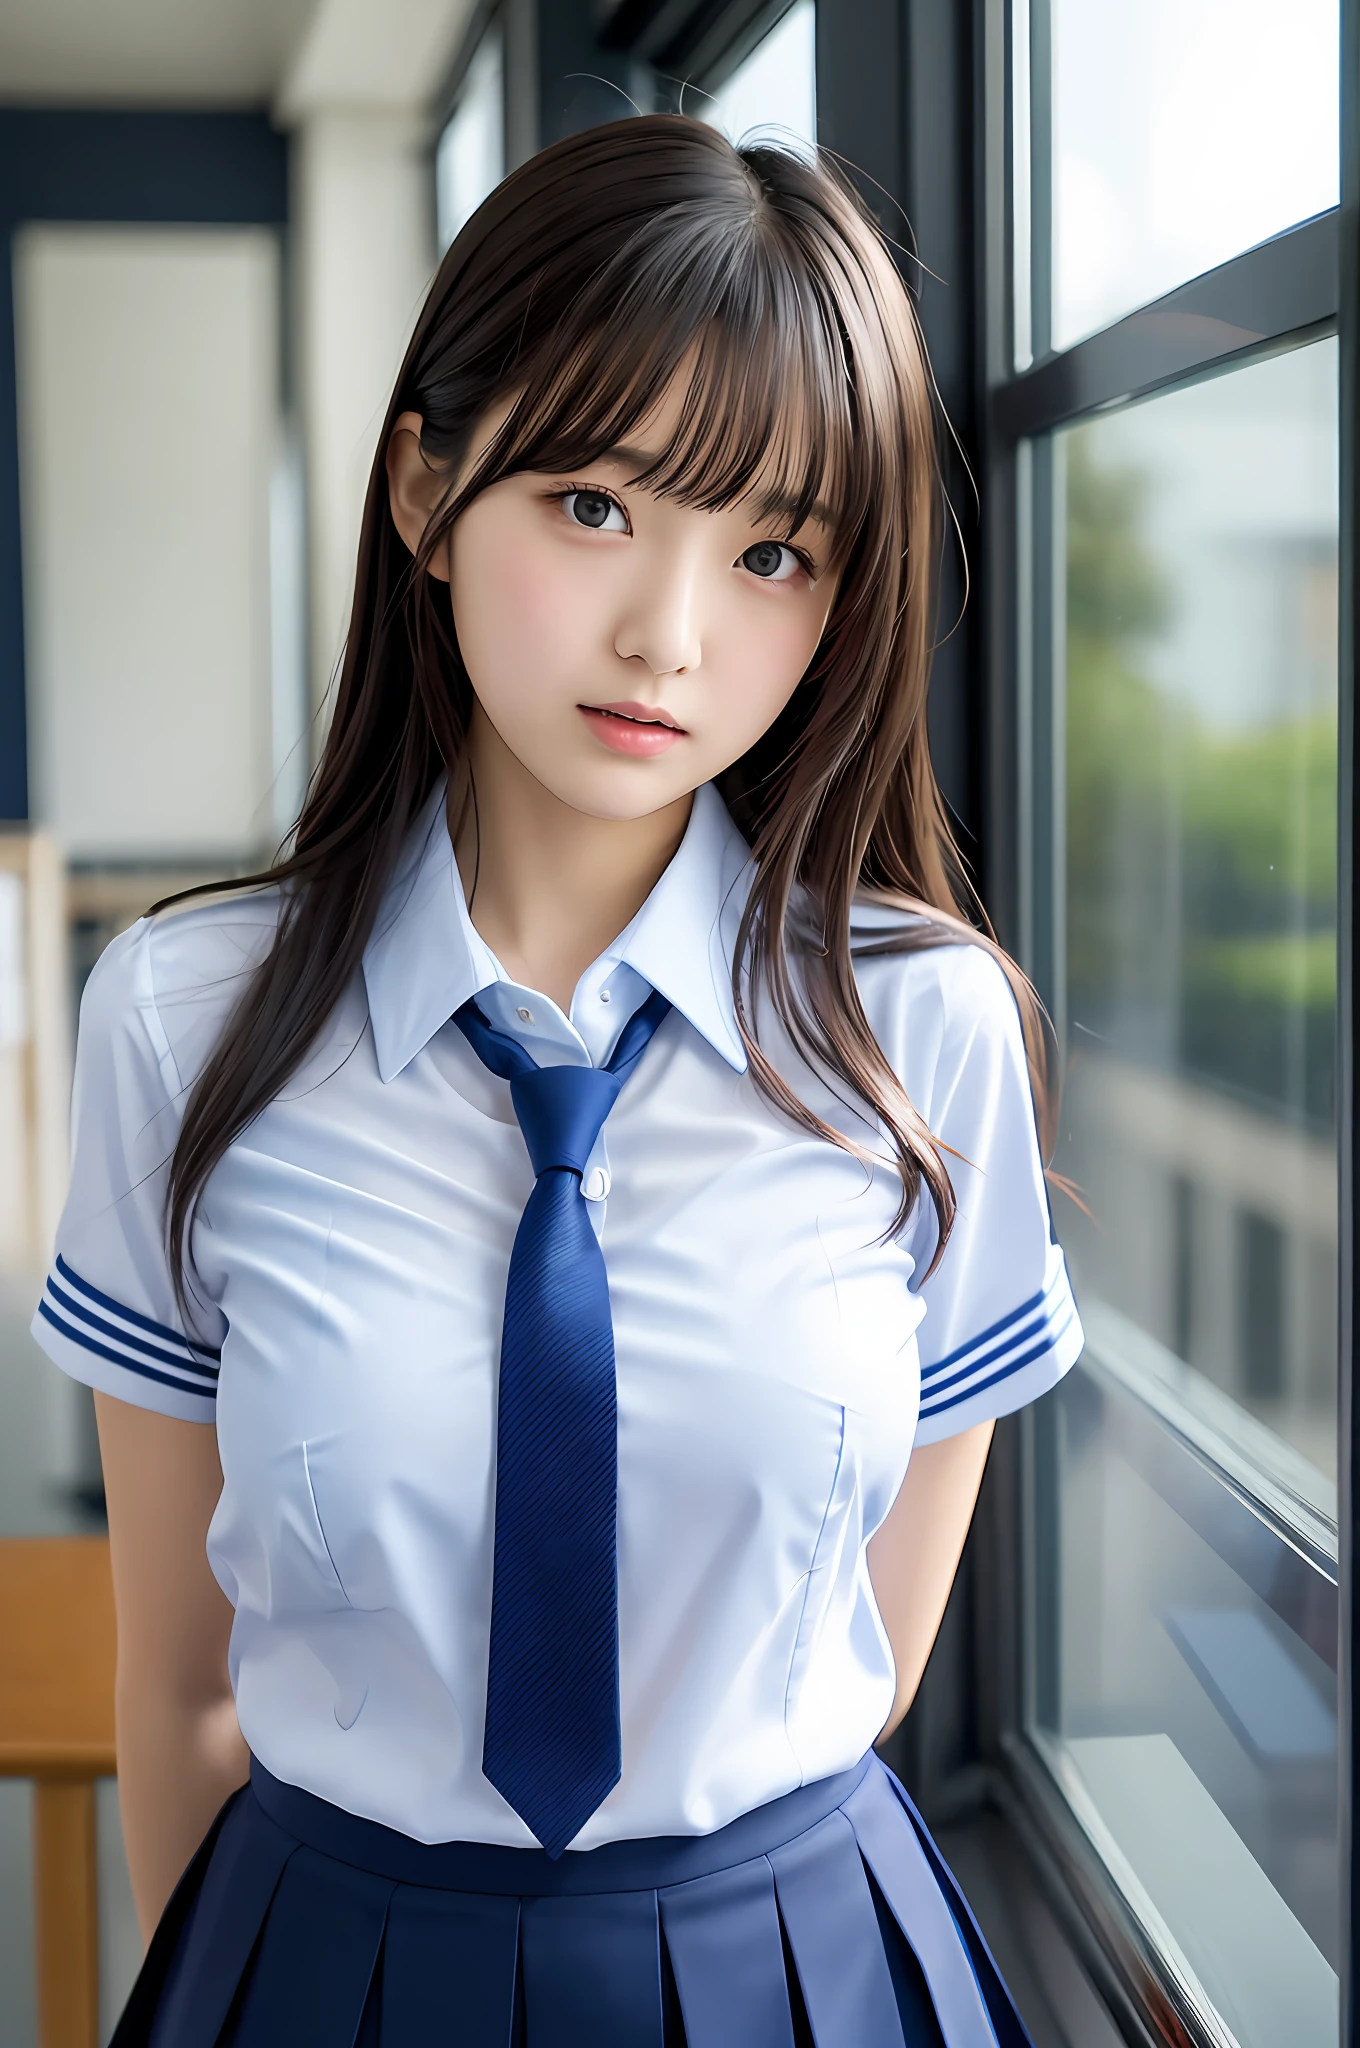 Garota Japonesa, adolescente, figura perfeita, Transparência, seios modestos, , Gravata azul marinho, Saia Azul Marinho, camisa azul clara, gravure idol